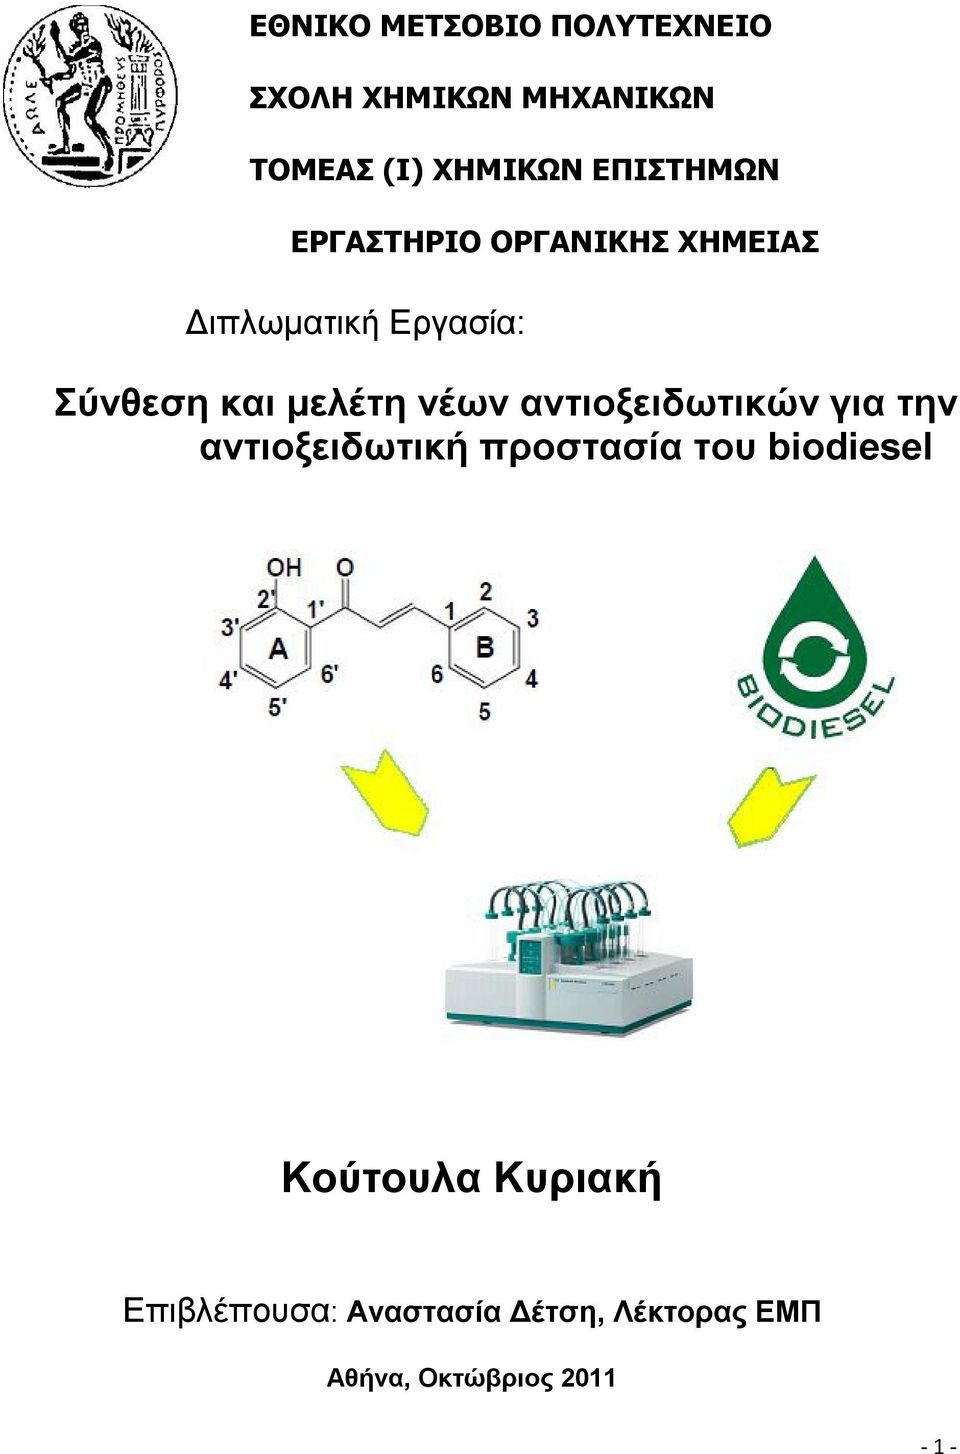 μελέτη νέων αντιοξειδωτικών για την αντιοξειδωτική προστασία του biodiesel